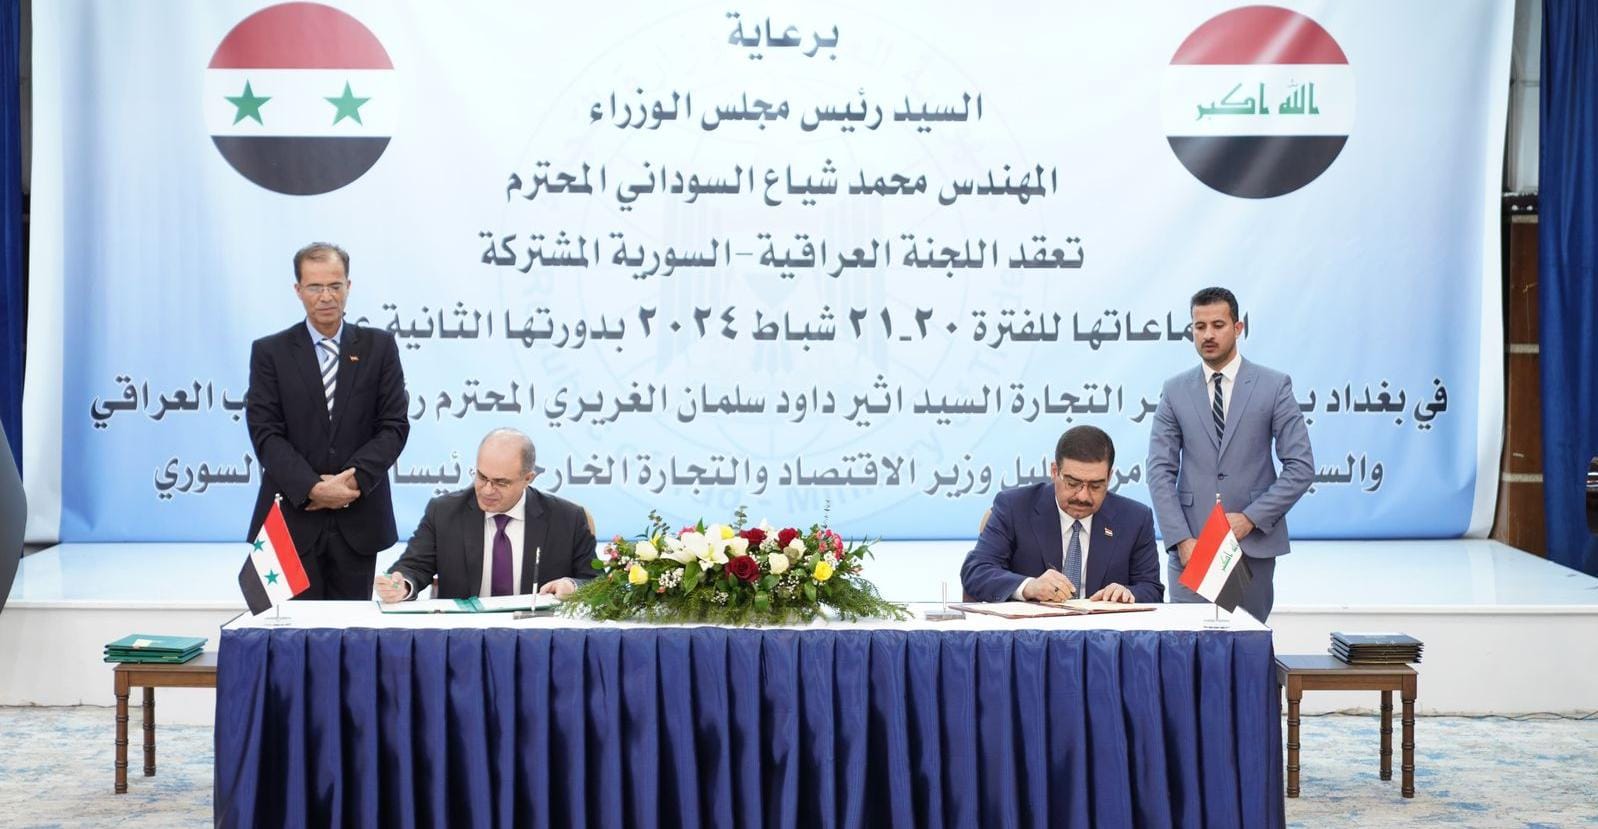 العراق وسوريا يوقعان عقد شراكة في العديد من المجالات التجارية والاستثمارية